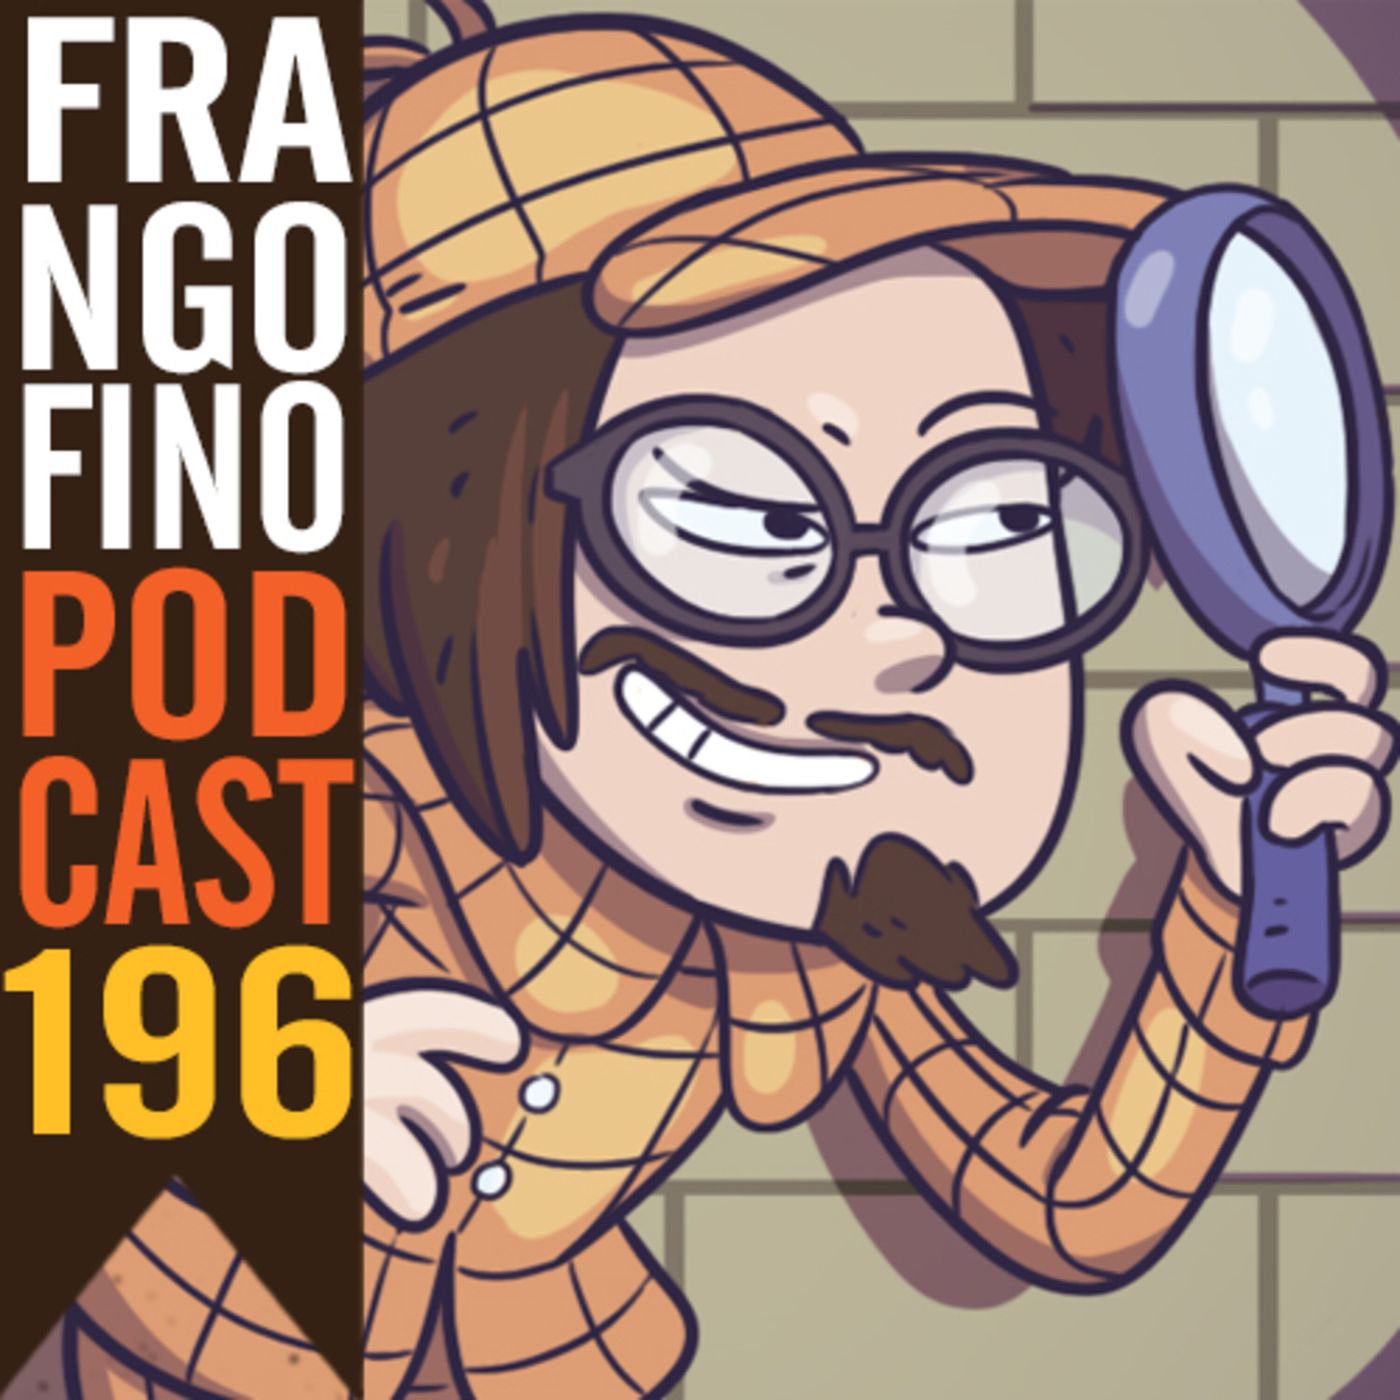 FRANGO FINO 196 | O DETETIVE GA-RAFINHA